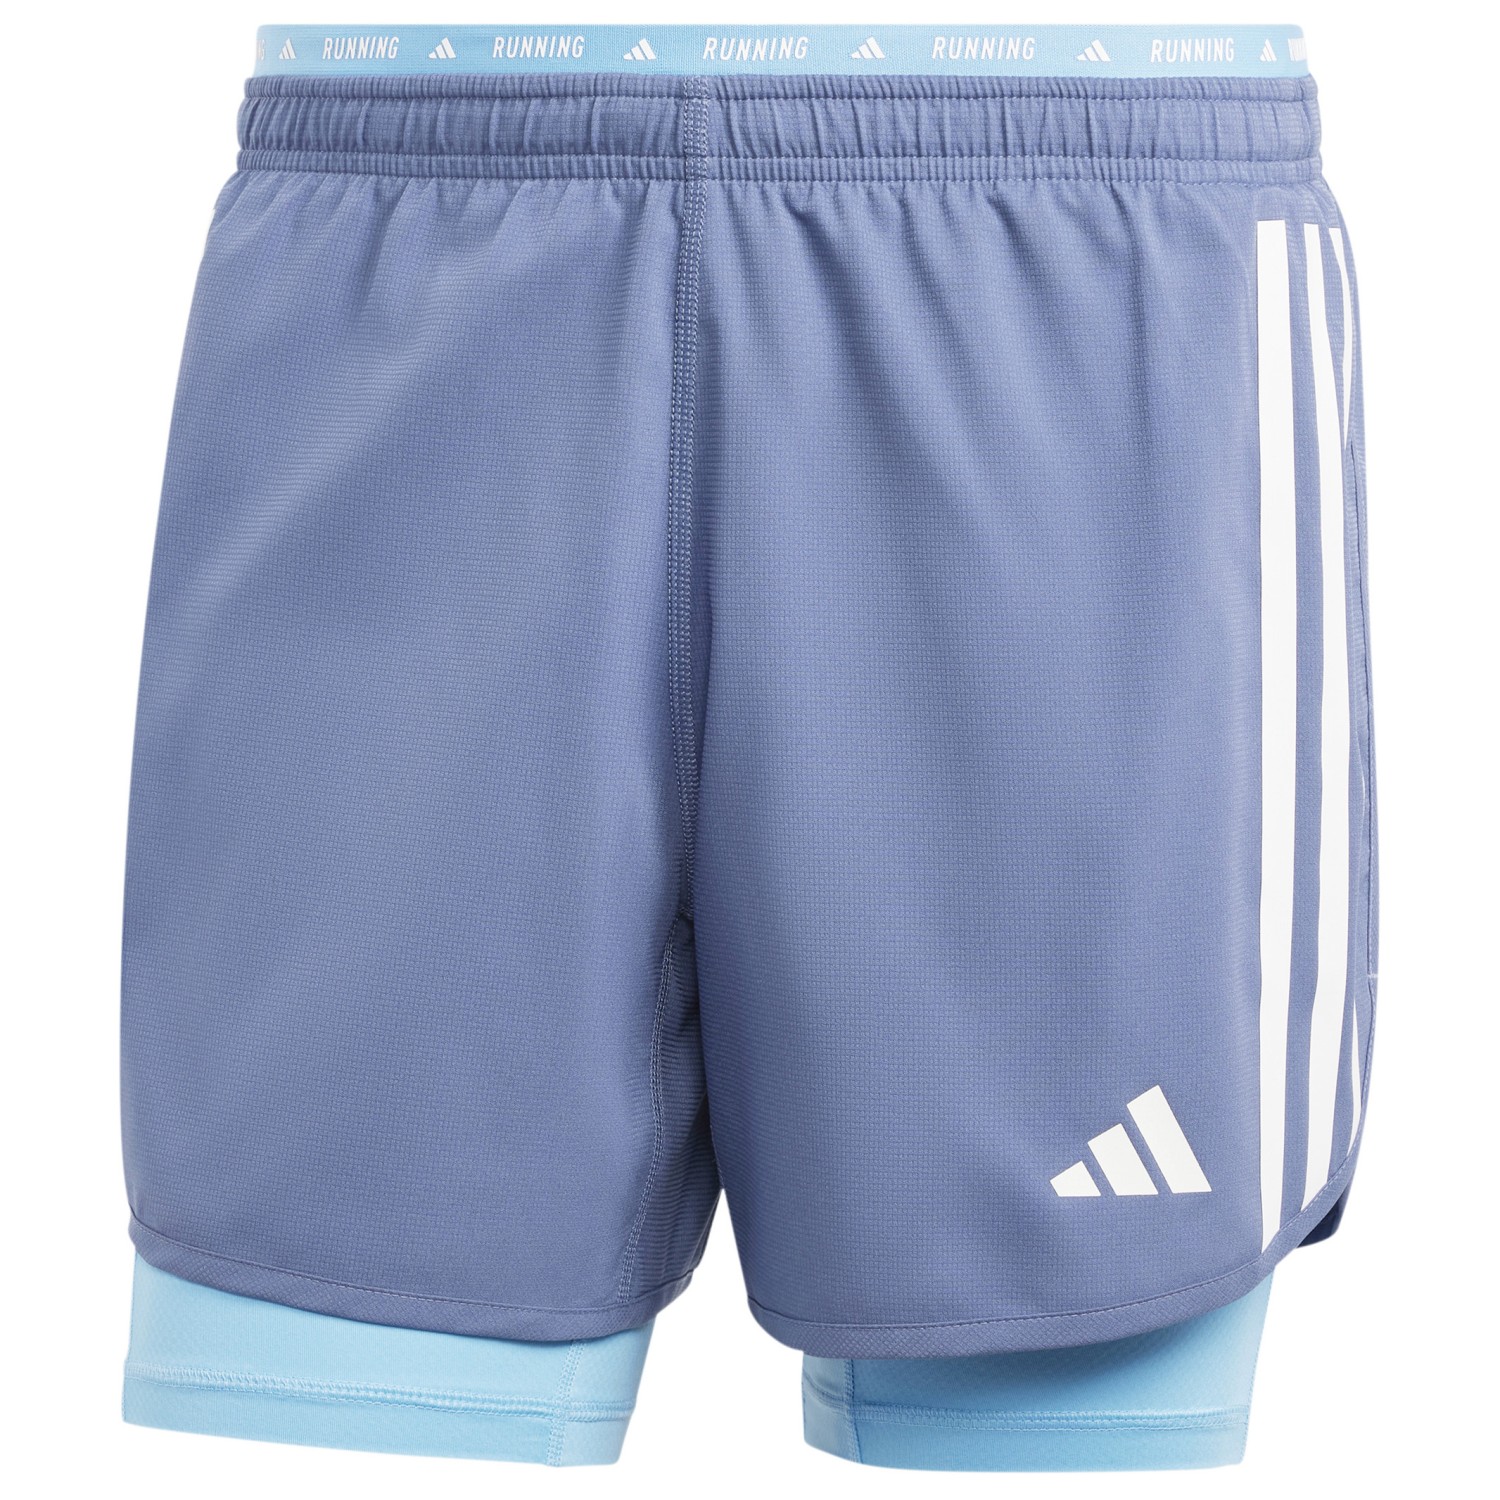 Шорты для бега Adidas Own The Run 3 Stripes 2in1 Shorts, цвет Preloved Ink